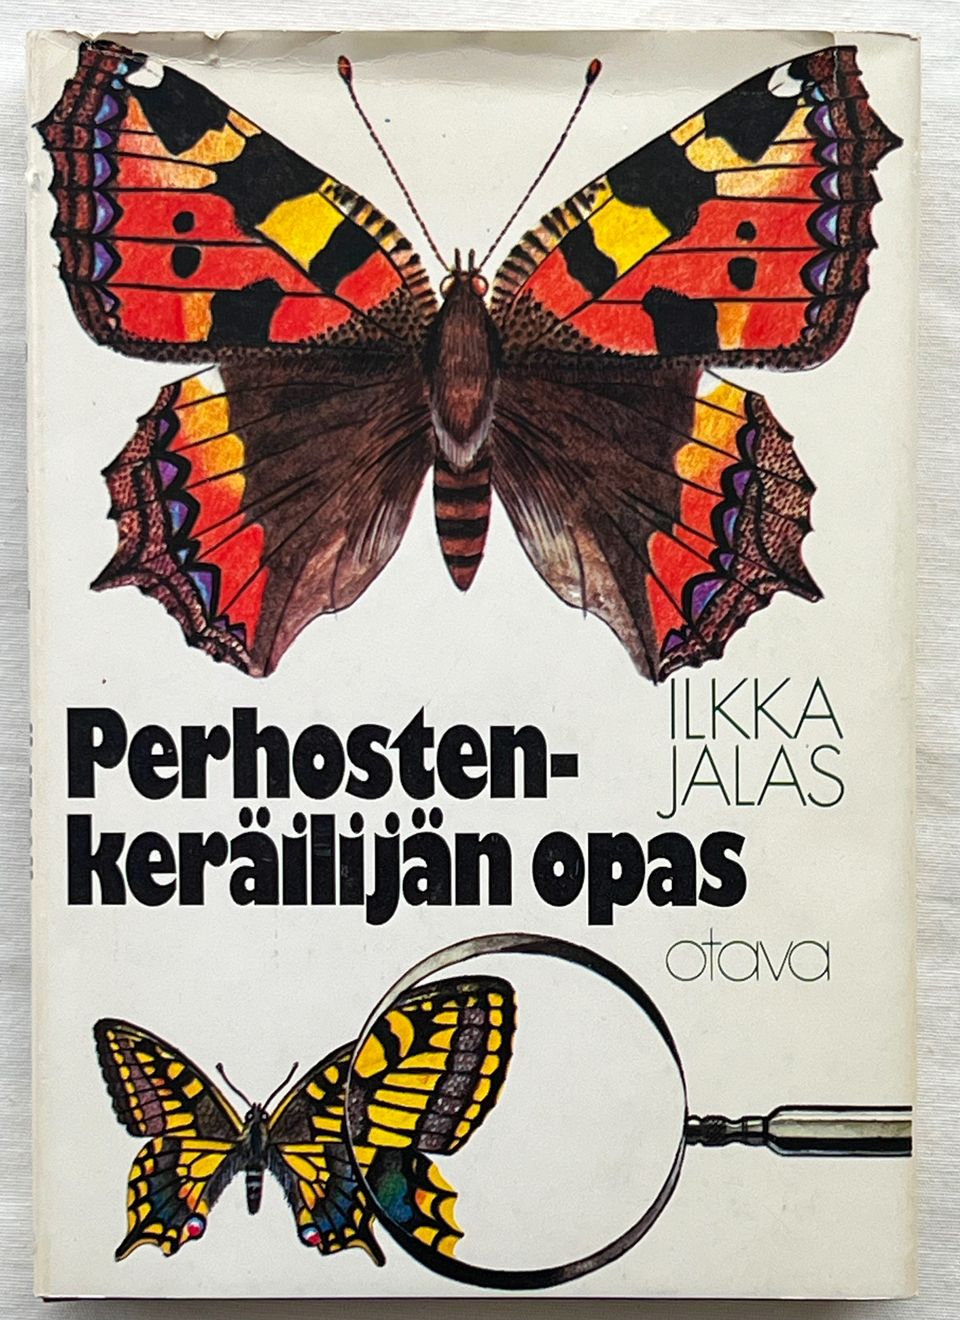 Ilkka Jalas Perhostenkeräilijän opas 2. uud painos 1975 sidottu